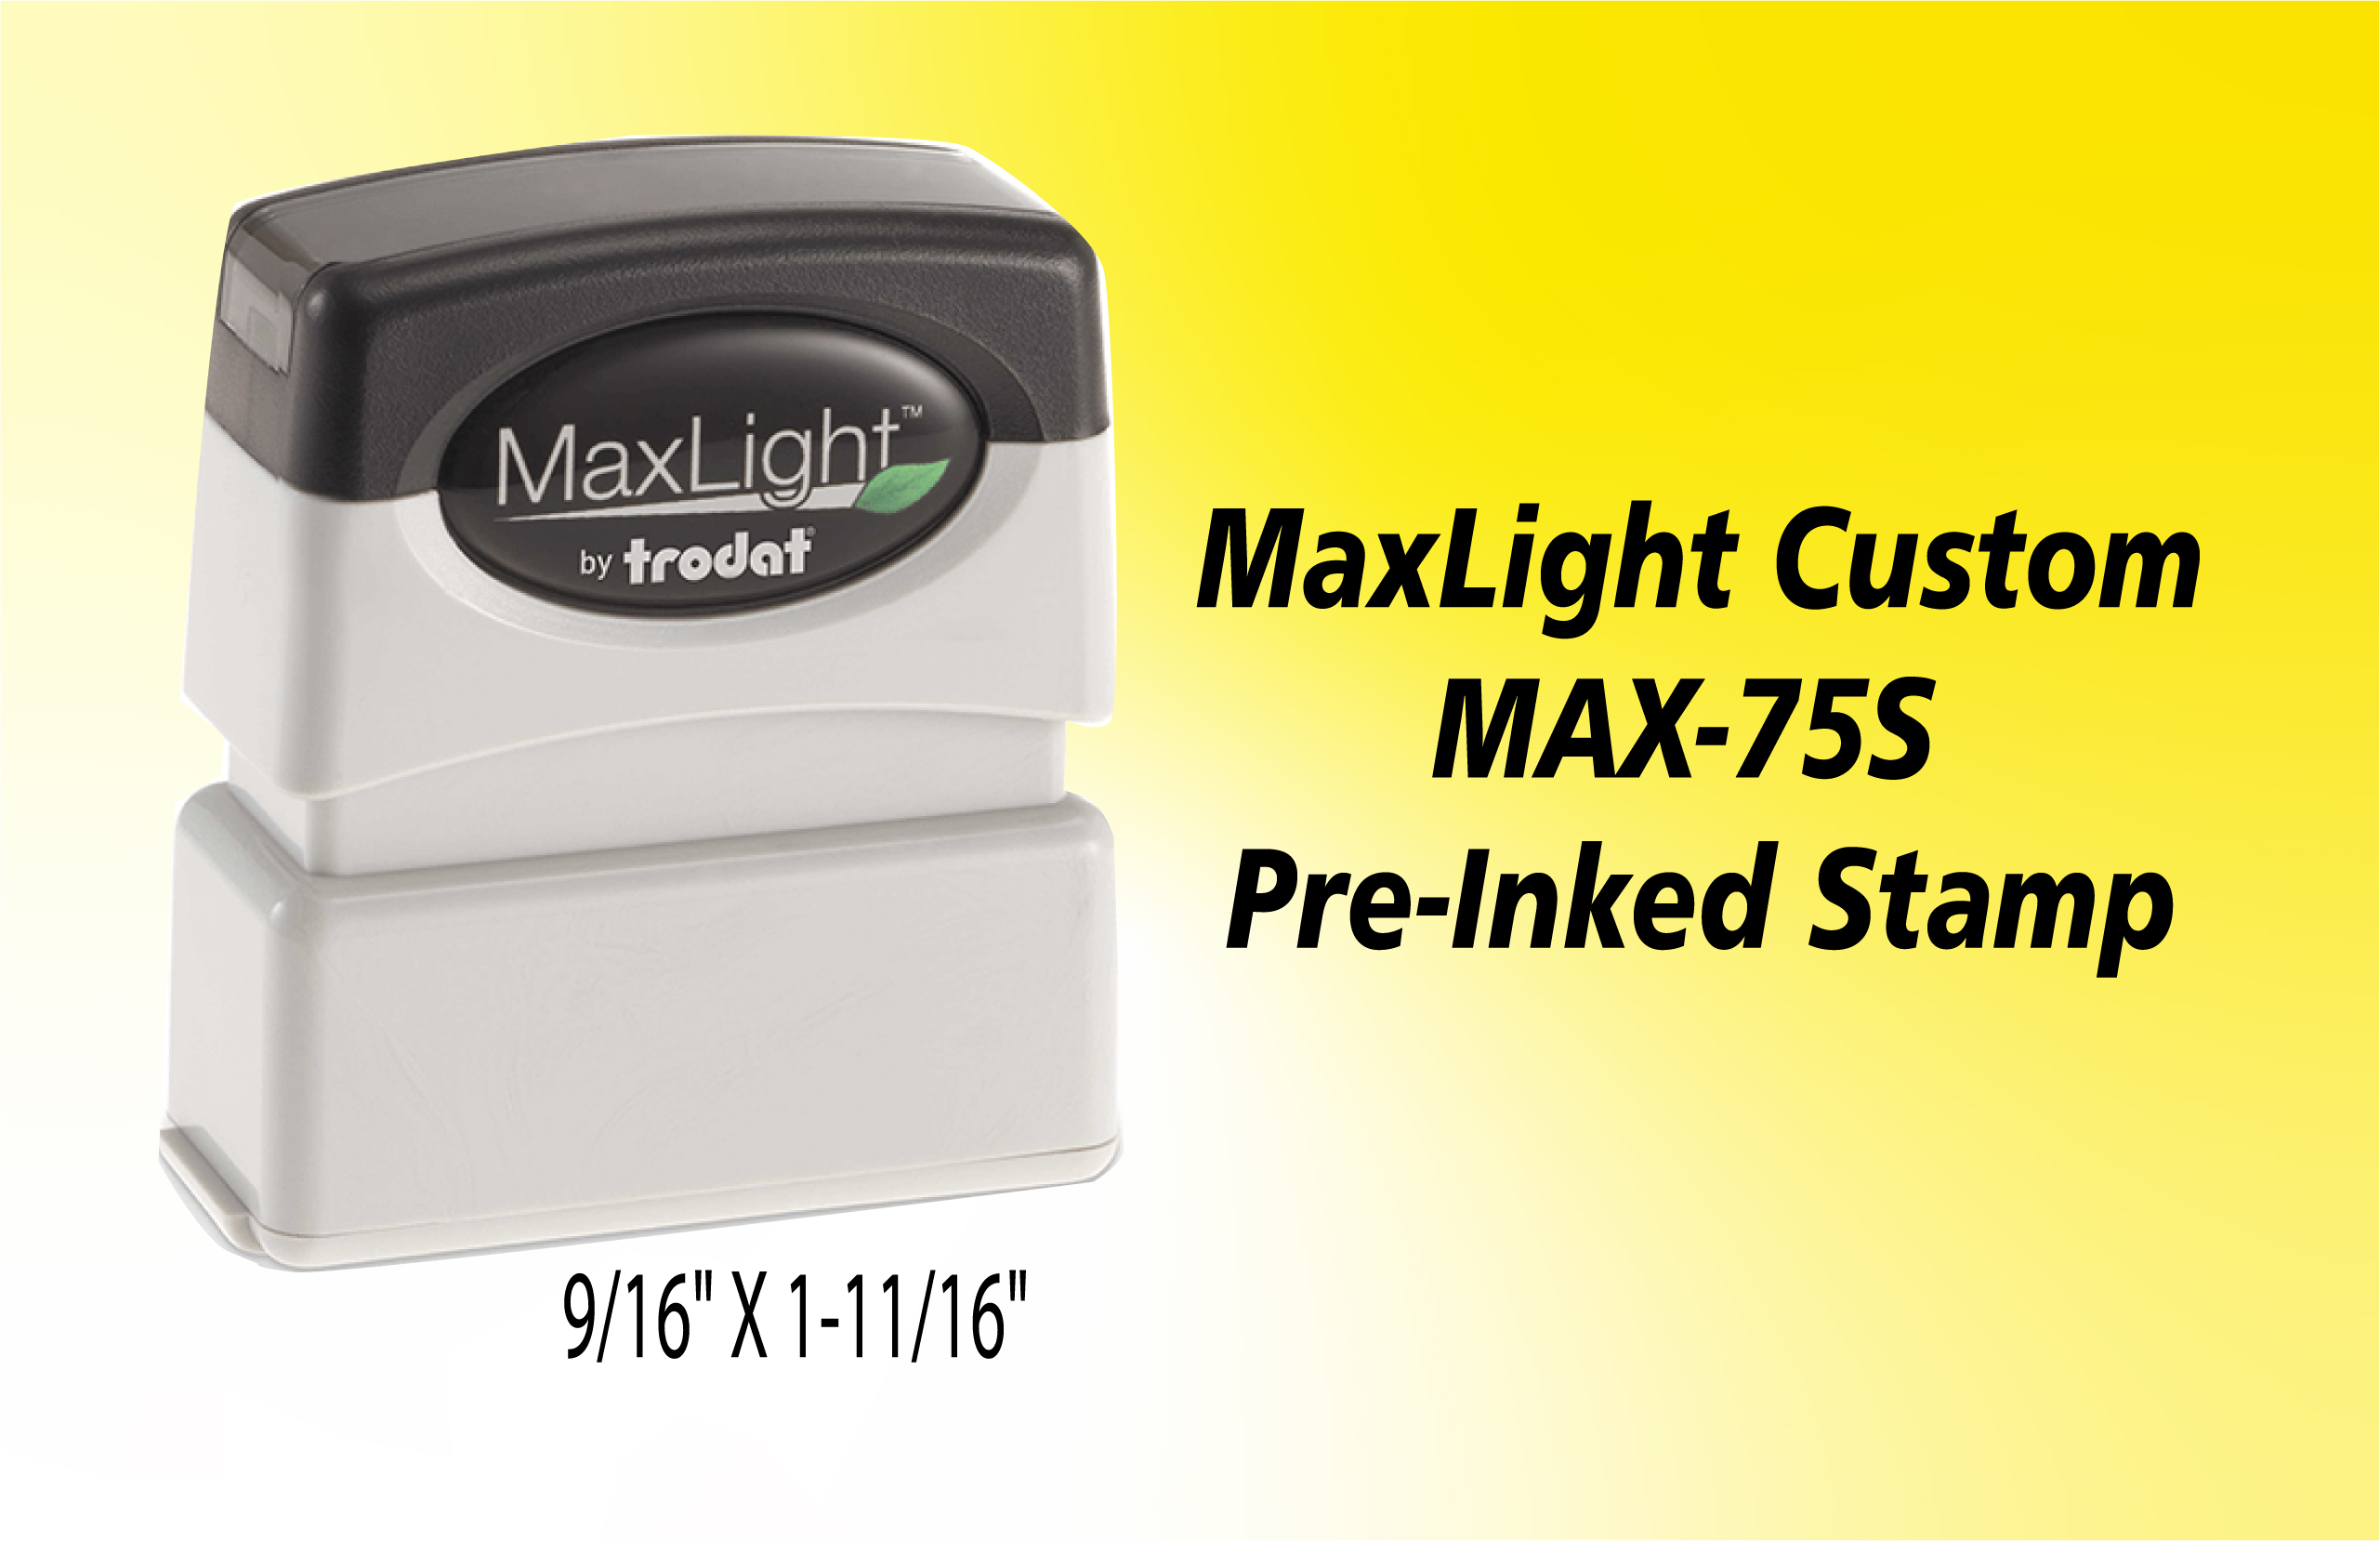 MaxLight 75 S- Atlas Stamp & Engraving